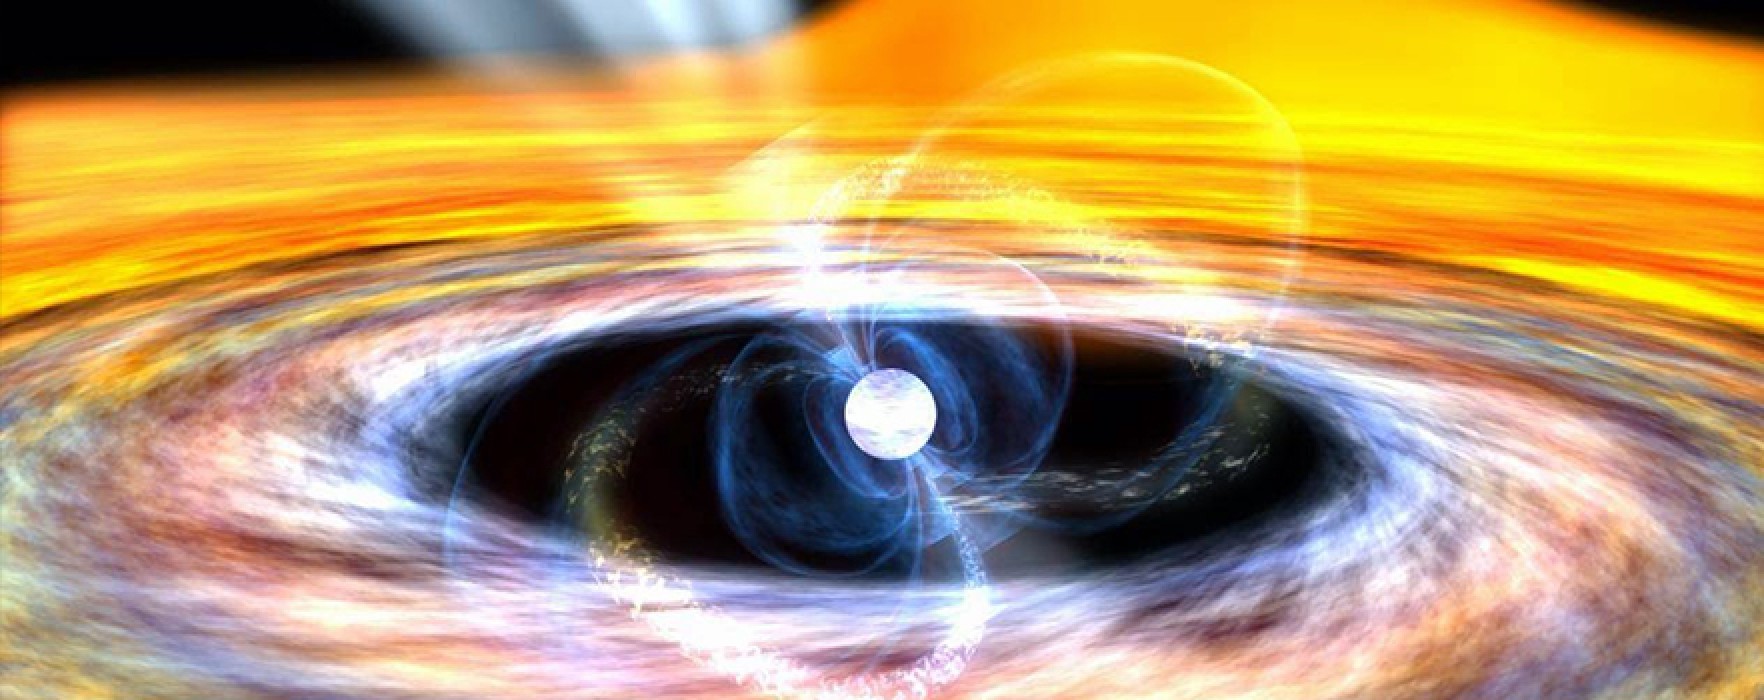 Atomların Çökmesi ile Oluşan Nötron Yıldızları